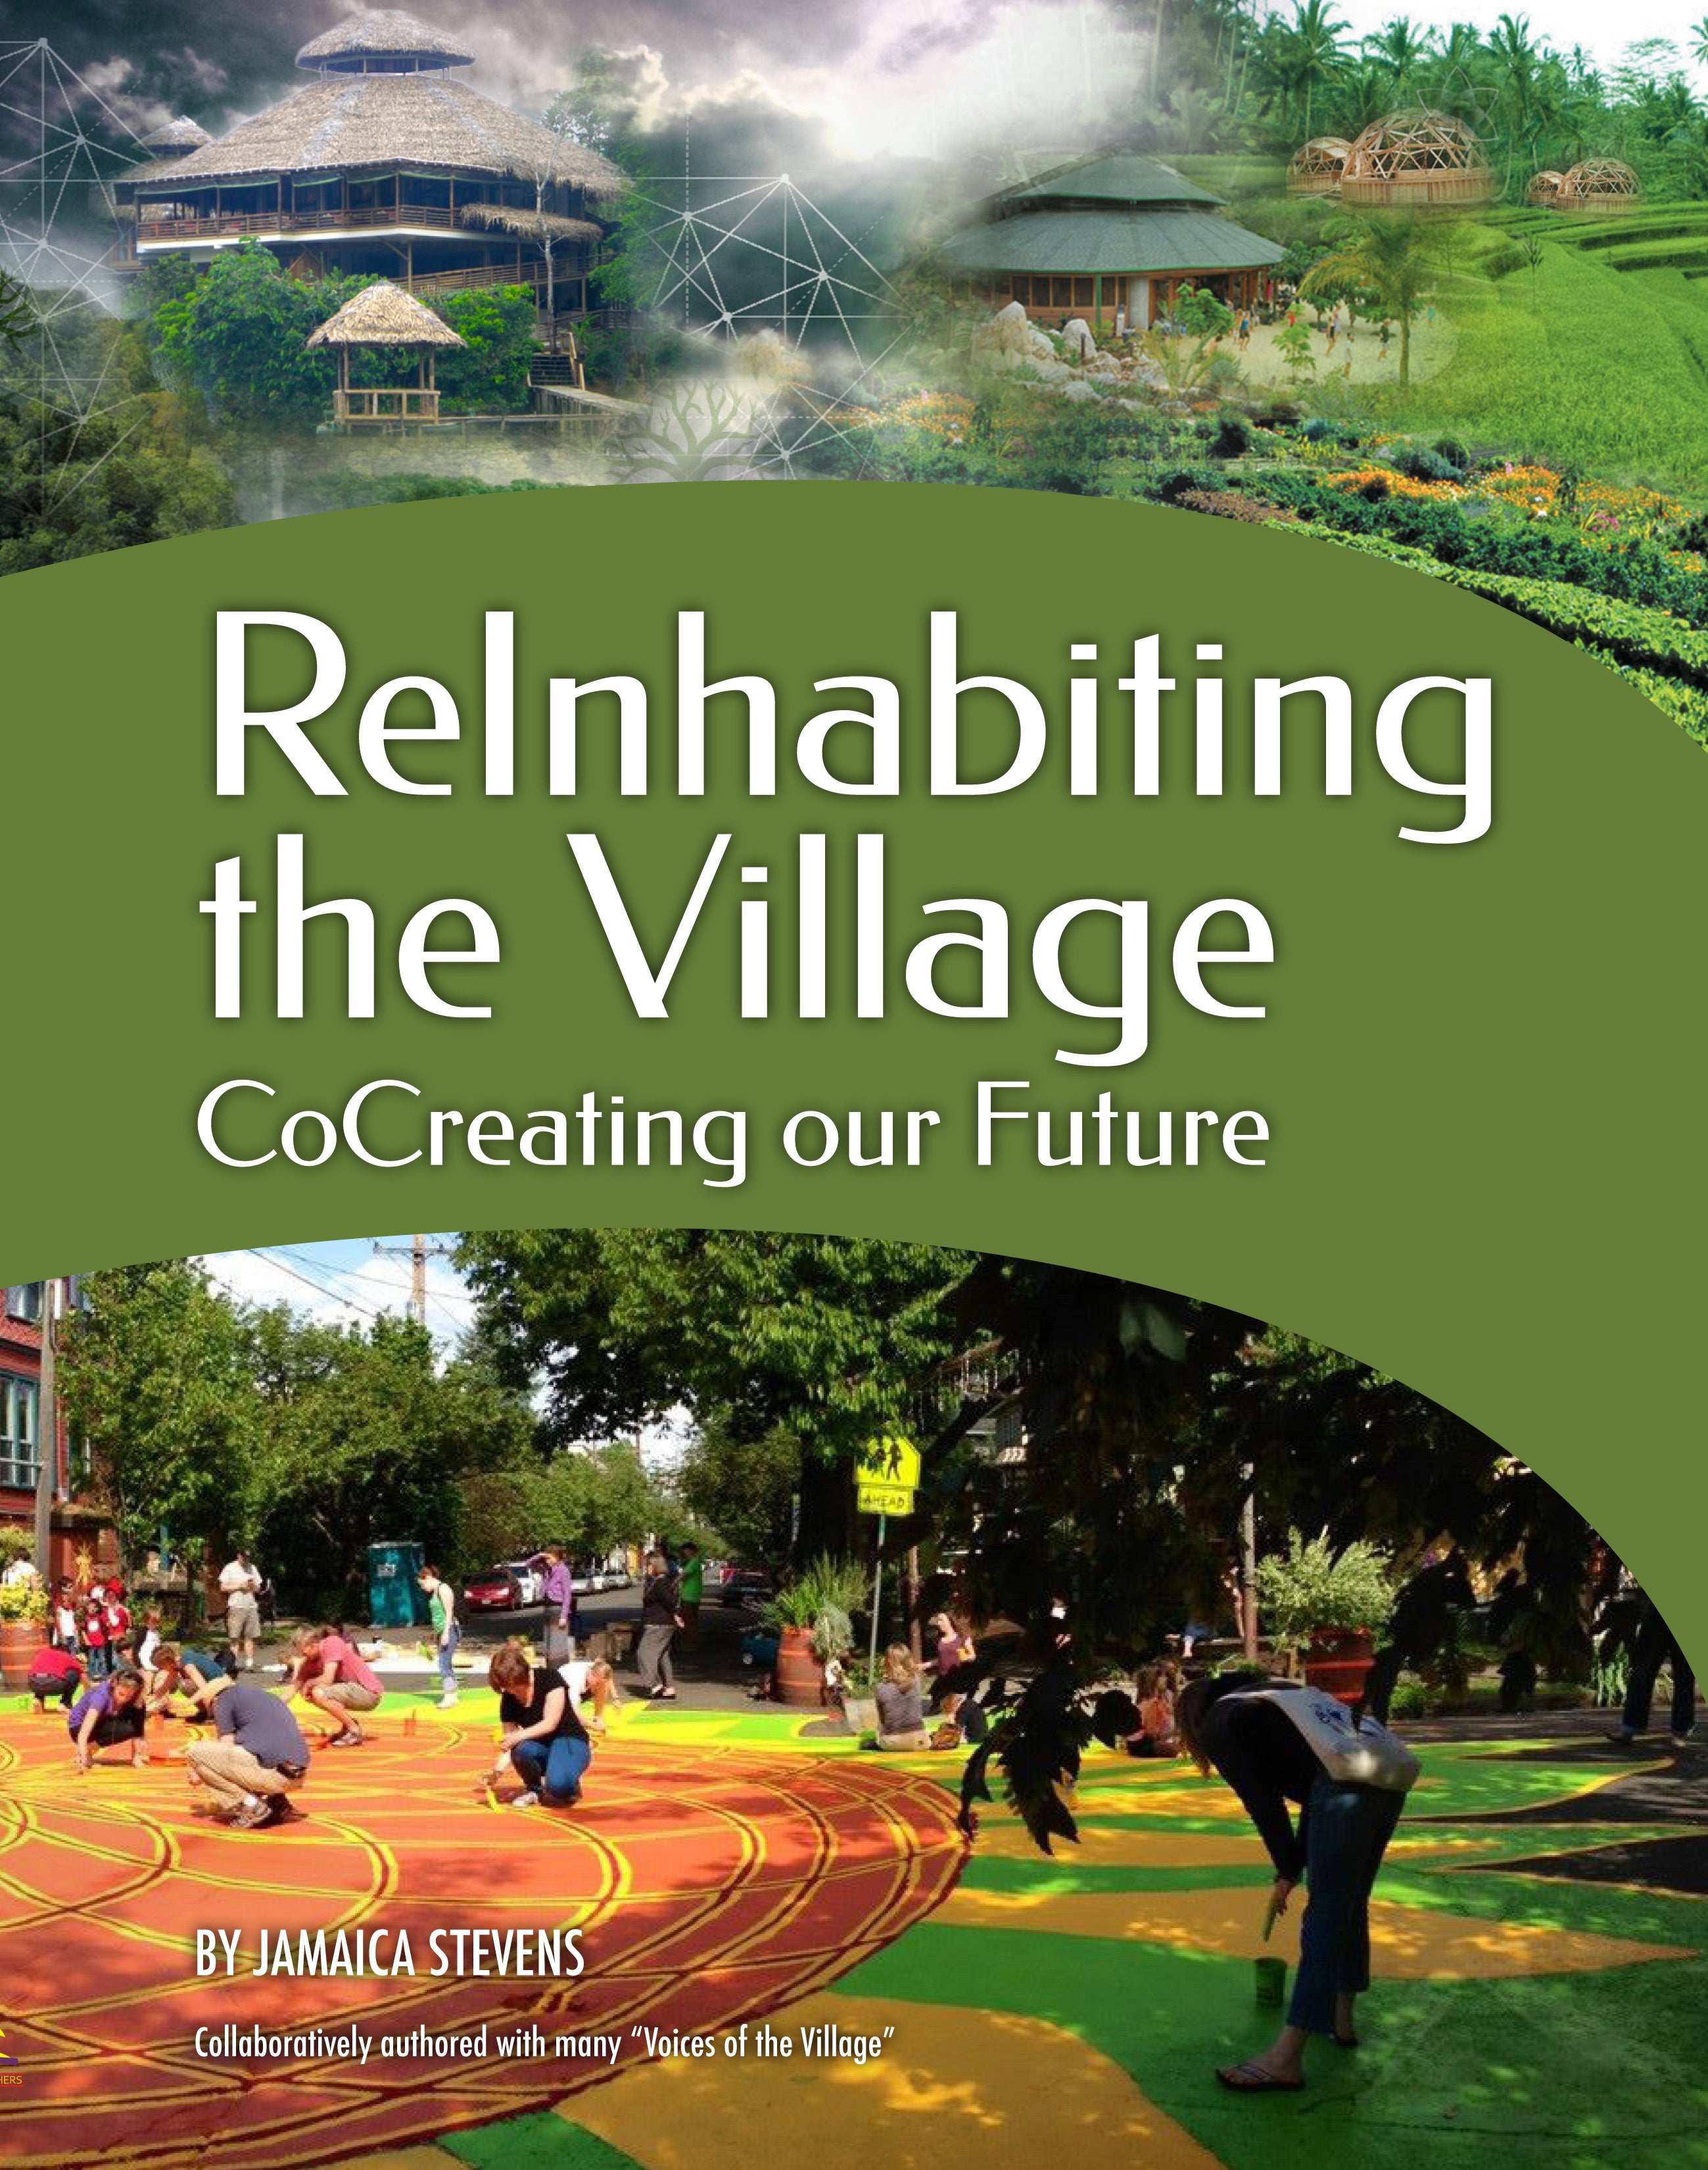 ReInhabiting the Village